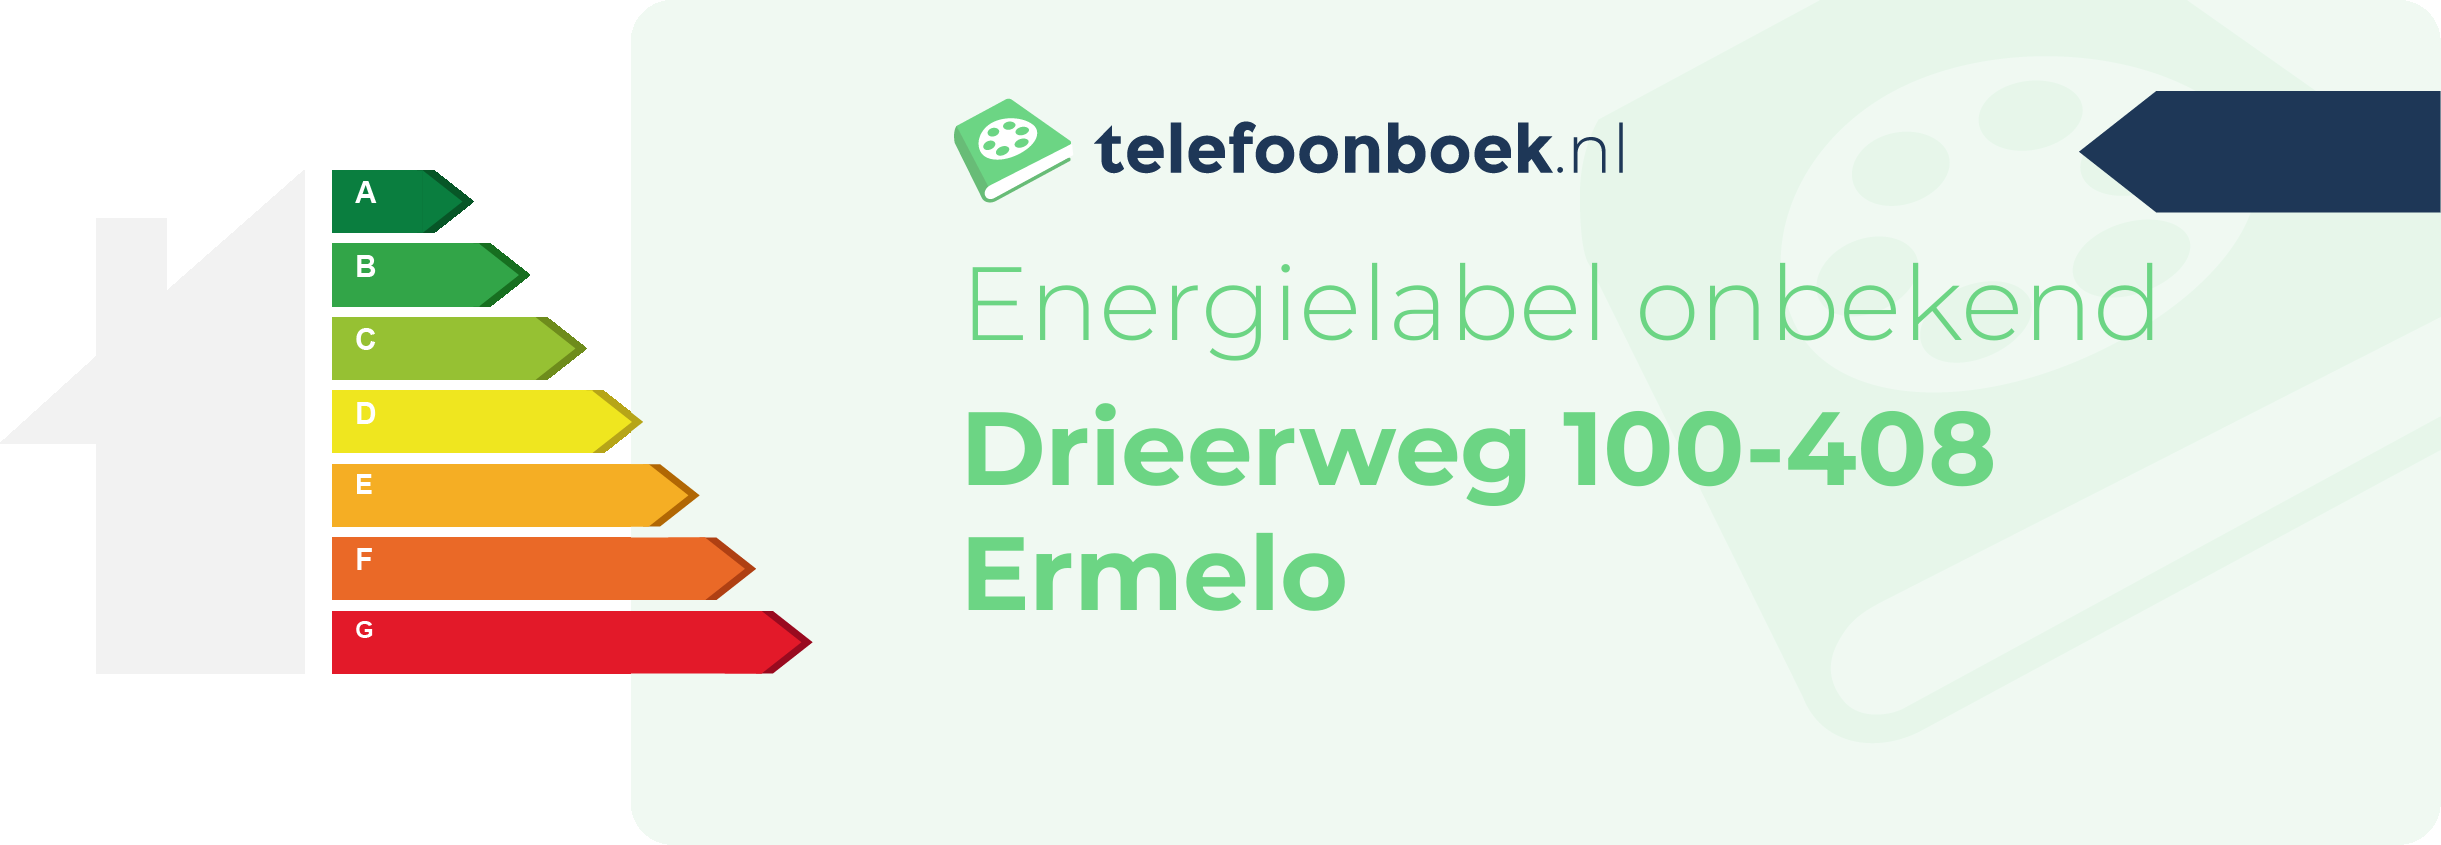 Energielabel Drieerweg 100-408 Ermelo